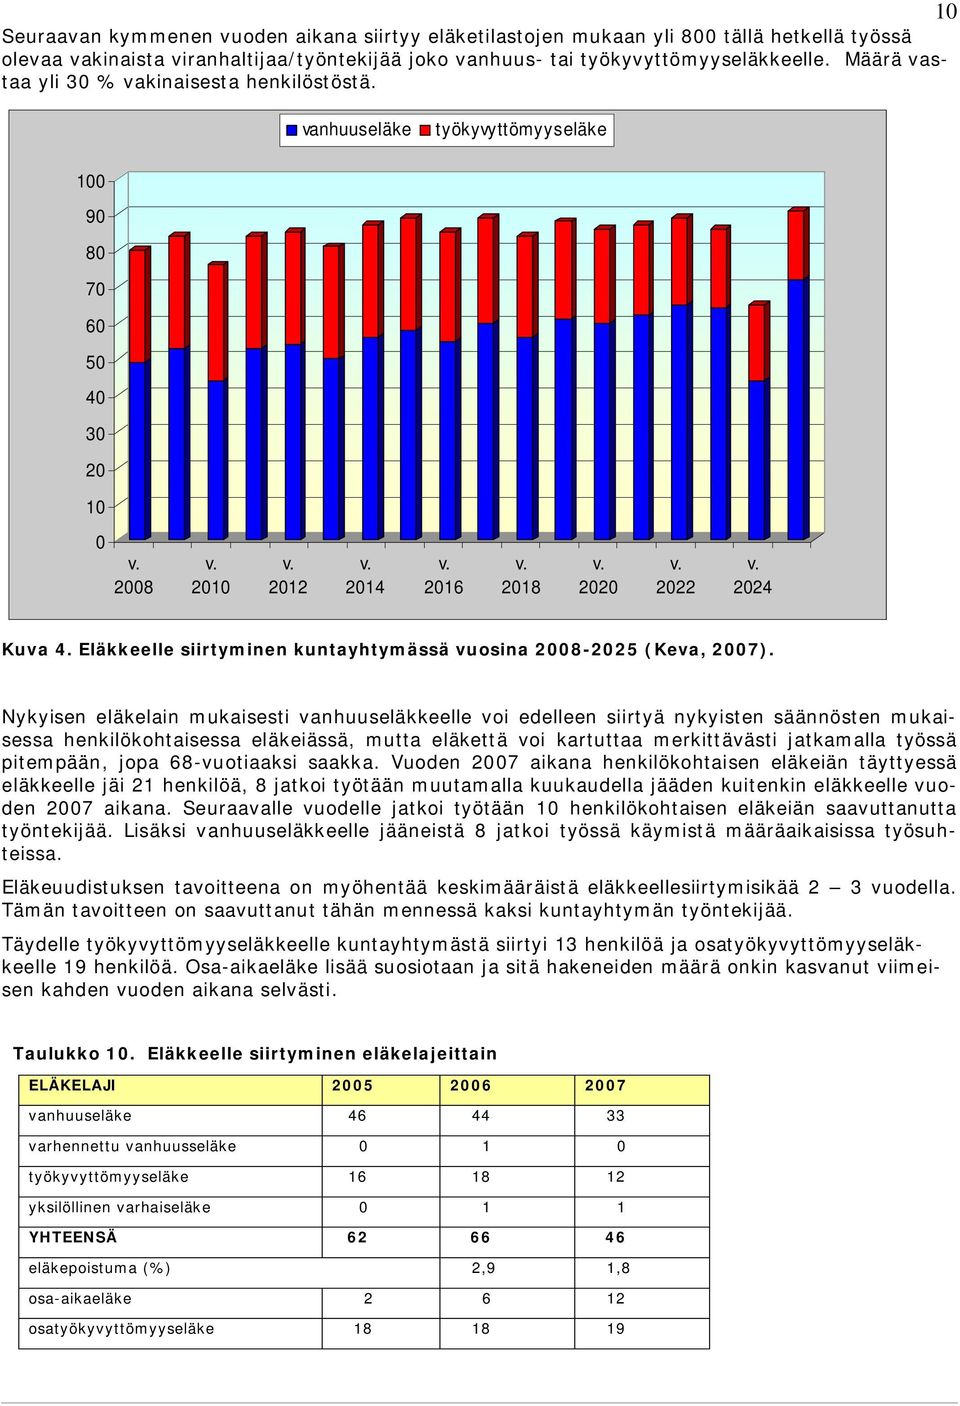 Eläkkeelle siirtyminen kuntayhtymässä vuosina 2008-2025 (Keva, 2007).